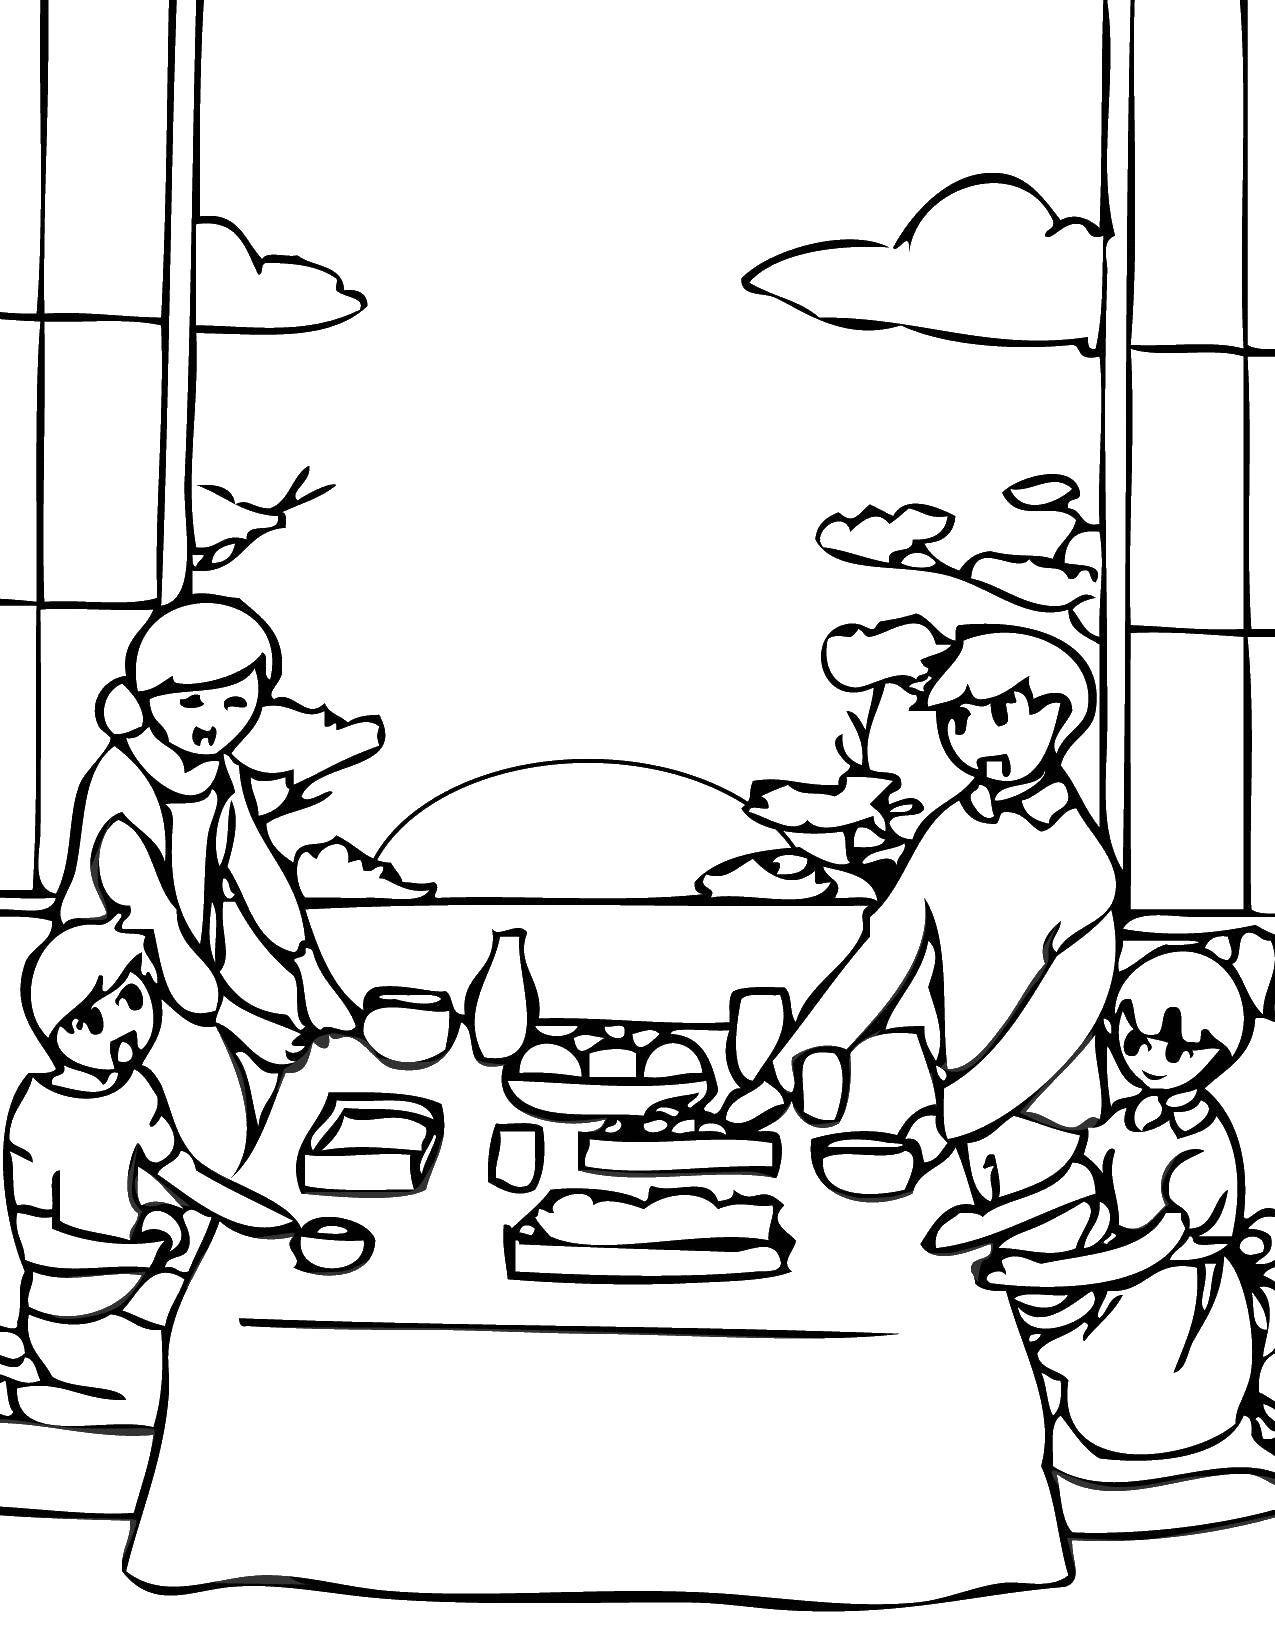 Название: Раскраска Ужин всей семьи. Категория: Семья. Теги: Семья, родители, дети.